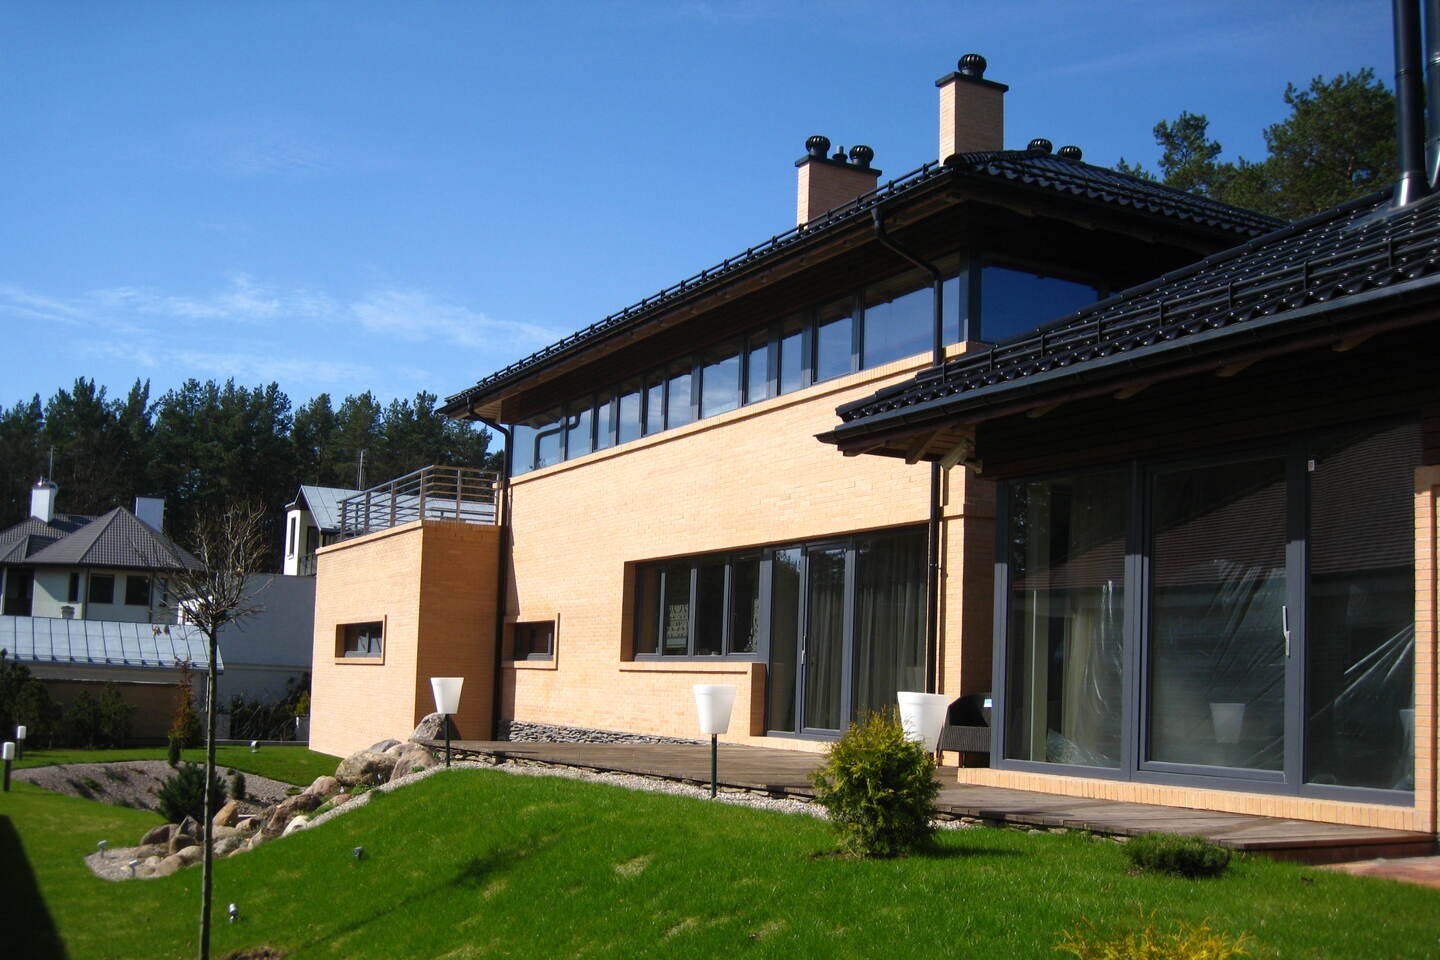 Gyvenamasis namas (Plytinės g. 10, Vilnius)